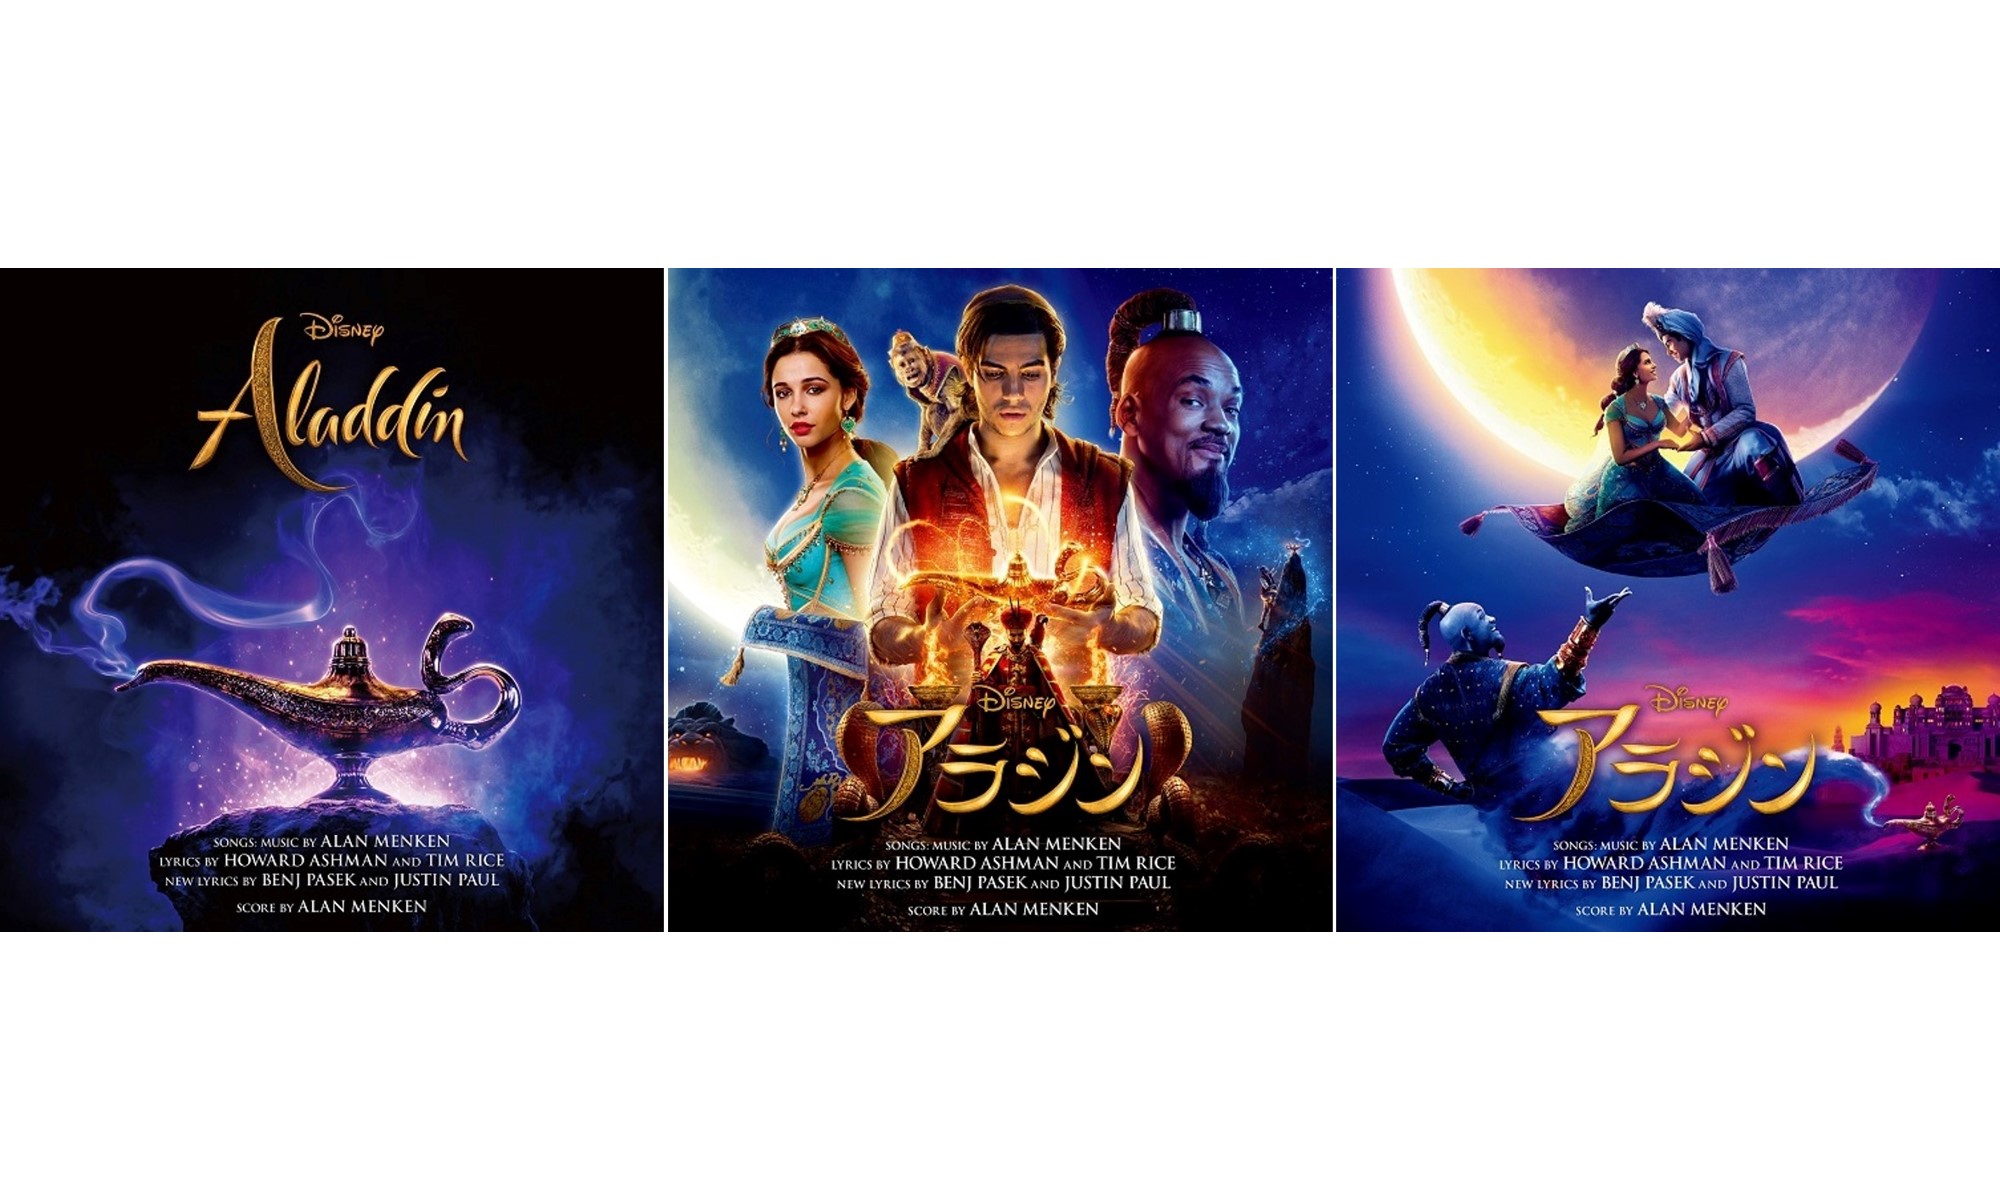 ディズニー映画 アラジン のサントラが3形態で発売決定 Zayn ジャヴァイア ワードによる A Whole New World のmvも公開